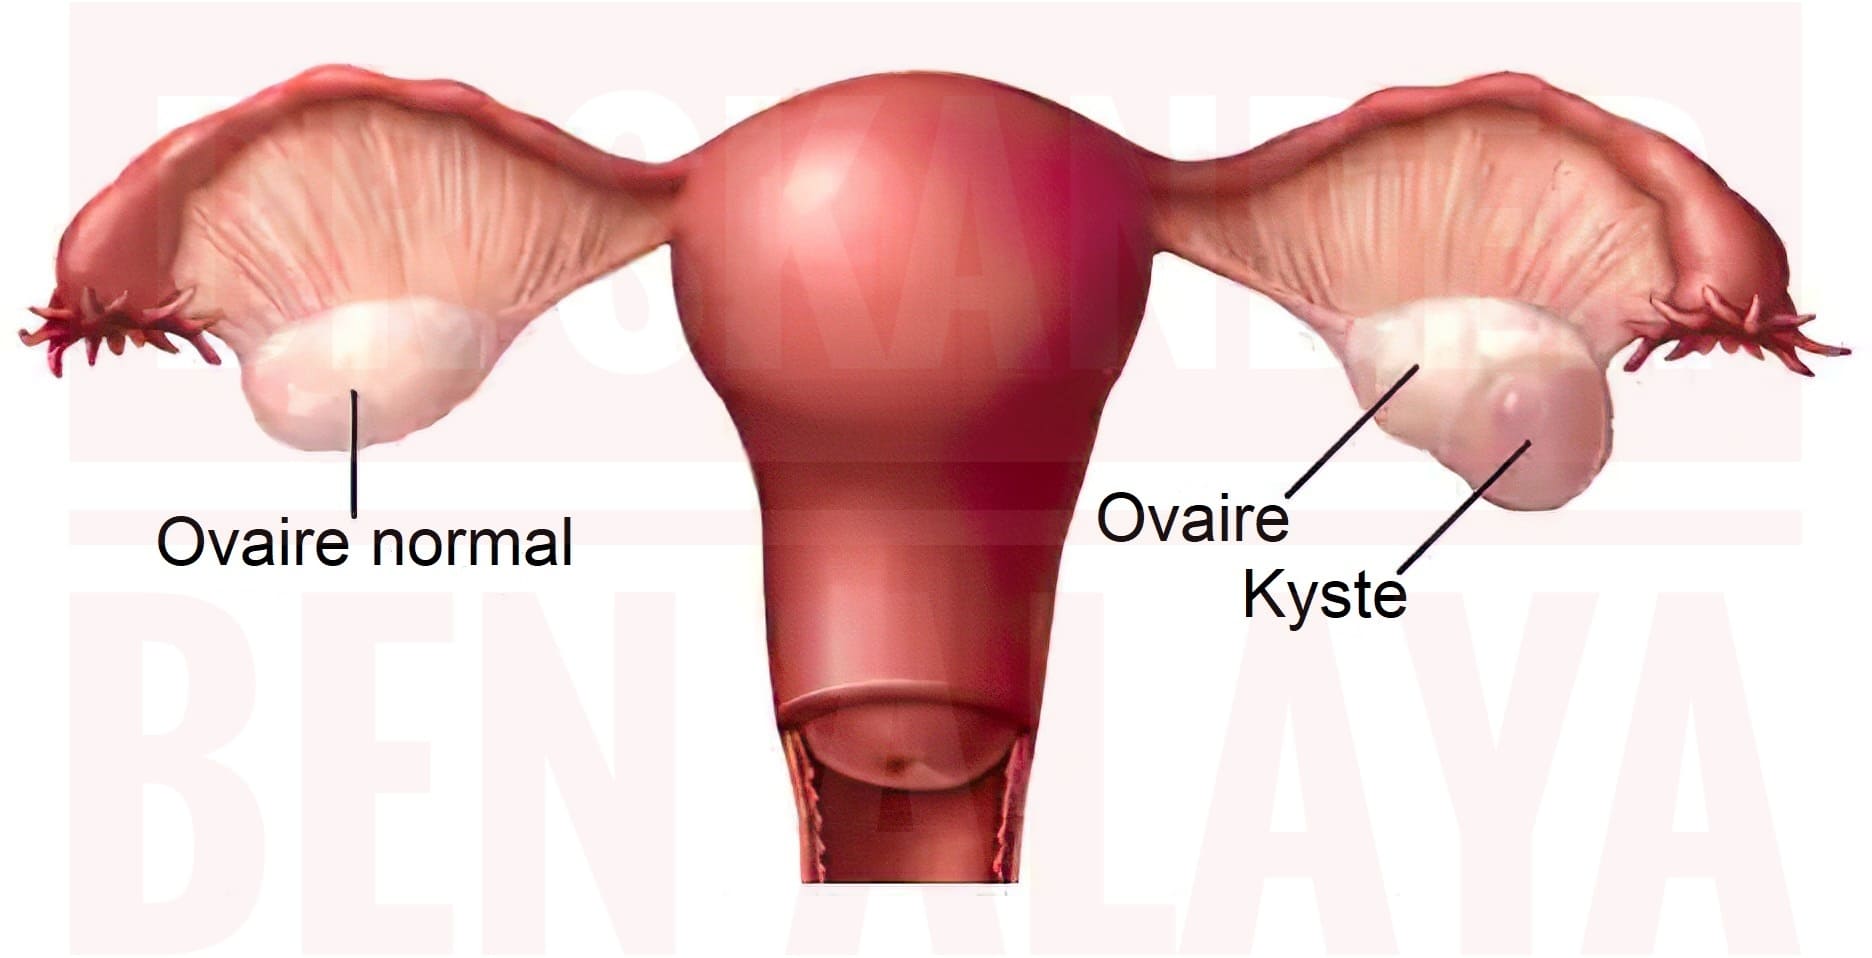 Le kyste de l'ovaire est une tumeur bénigne qui se développe au niveau des ovaires.